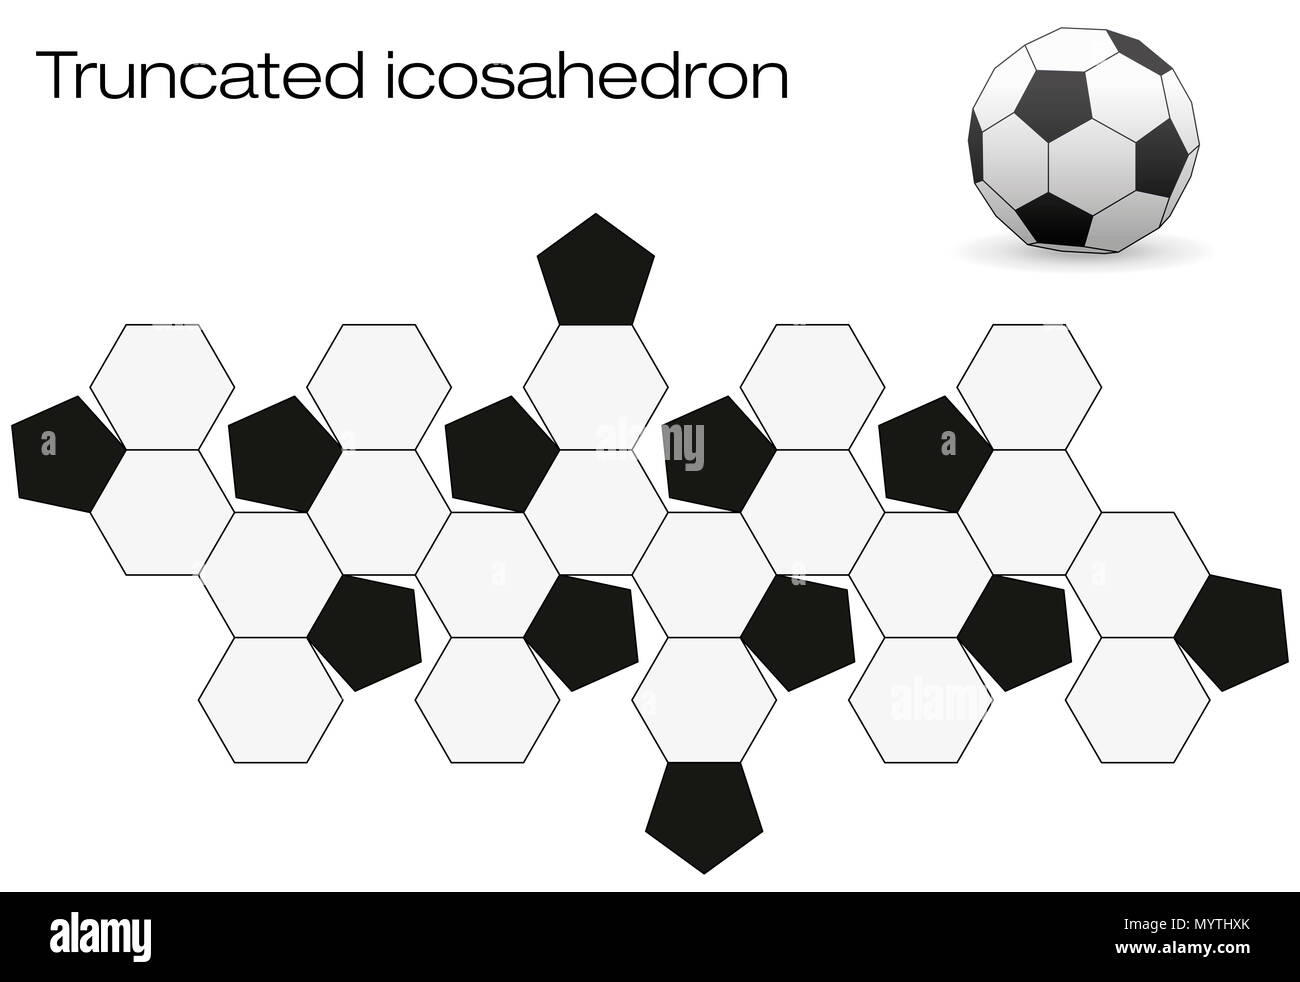 Surface dépliée d'un ballon de football. Polyèdre géométrique appelé icosaèdre tronqué, un solide d'Archimède avec douze et vingt noir faces blanches. Banque D'Images